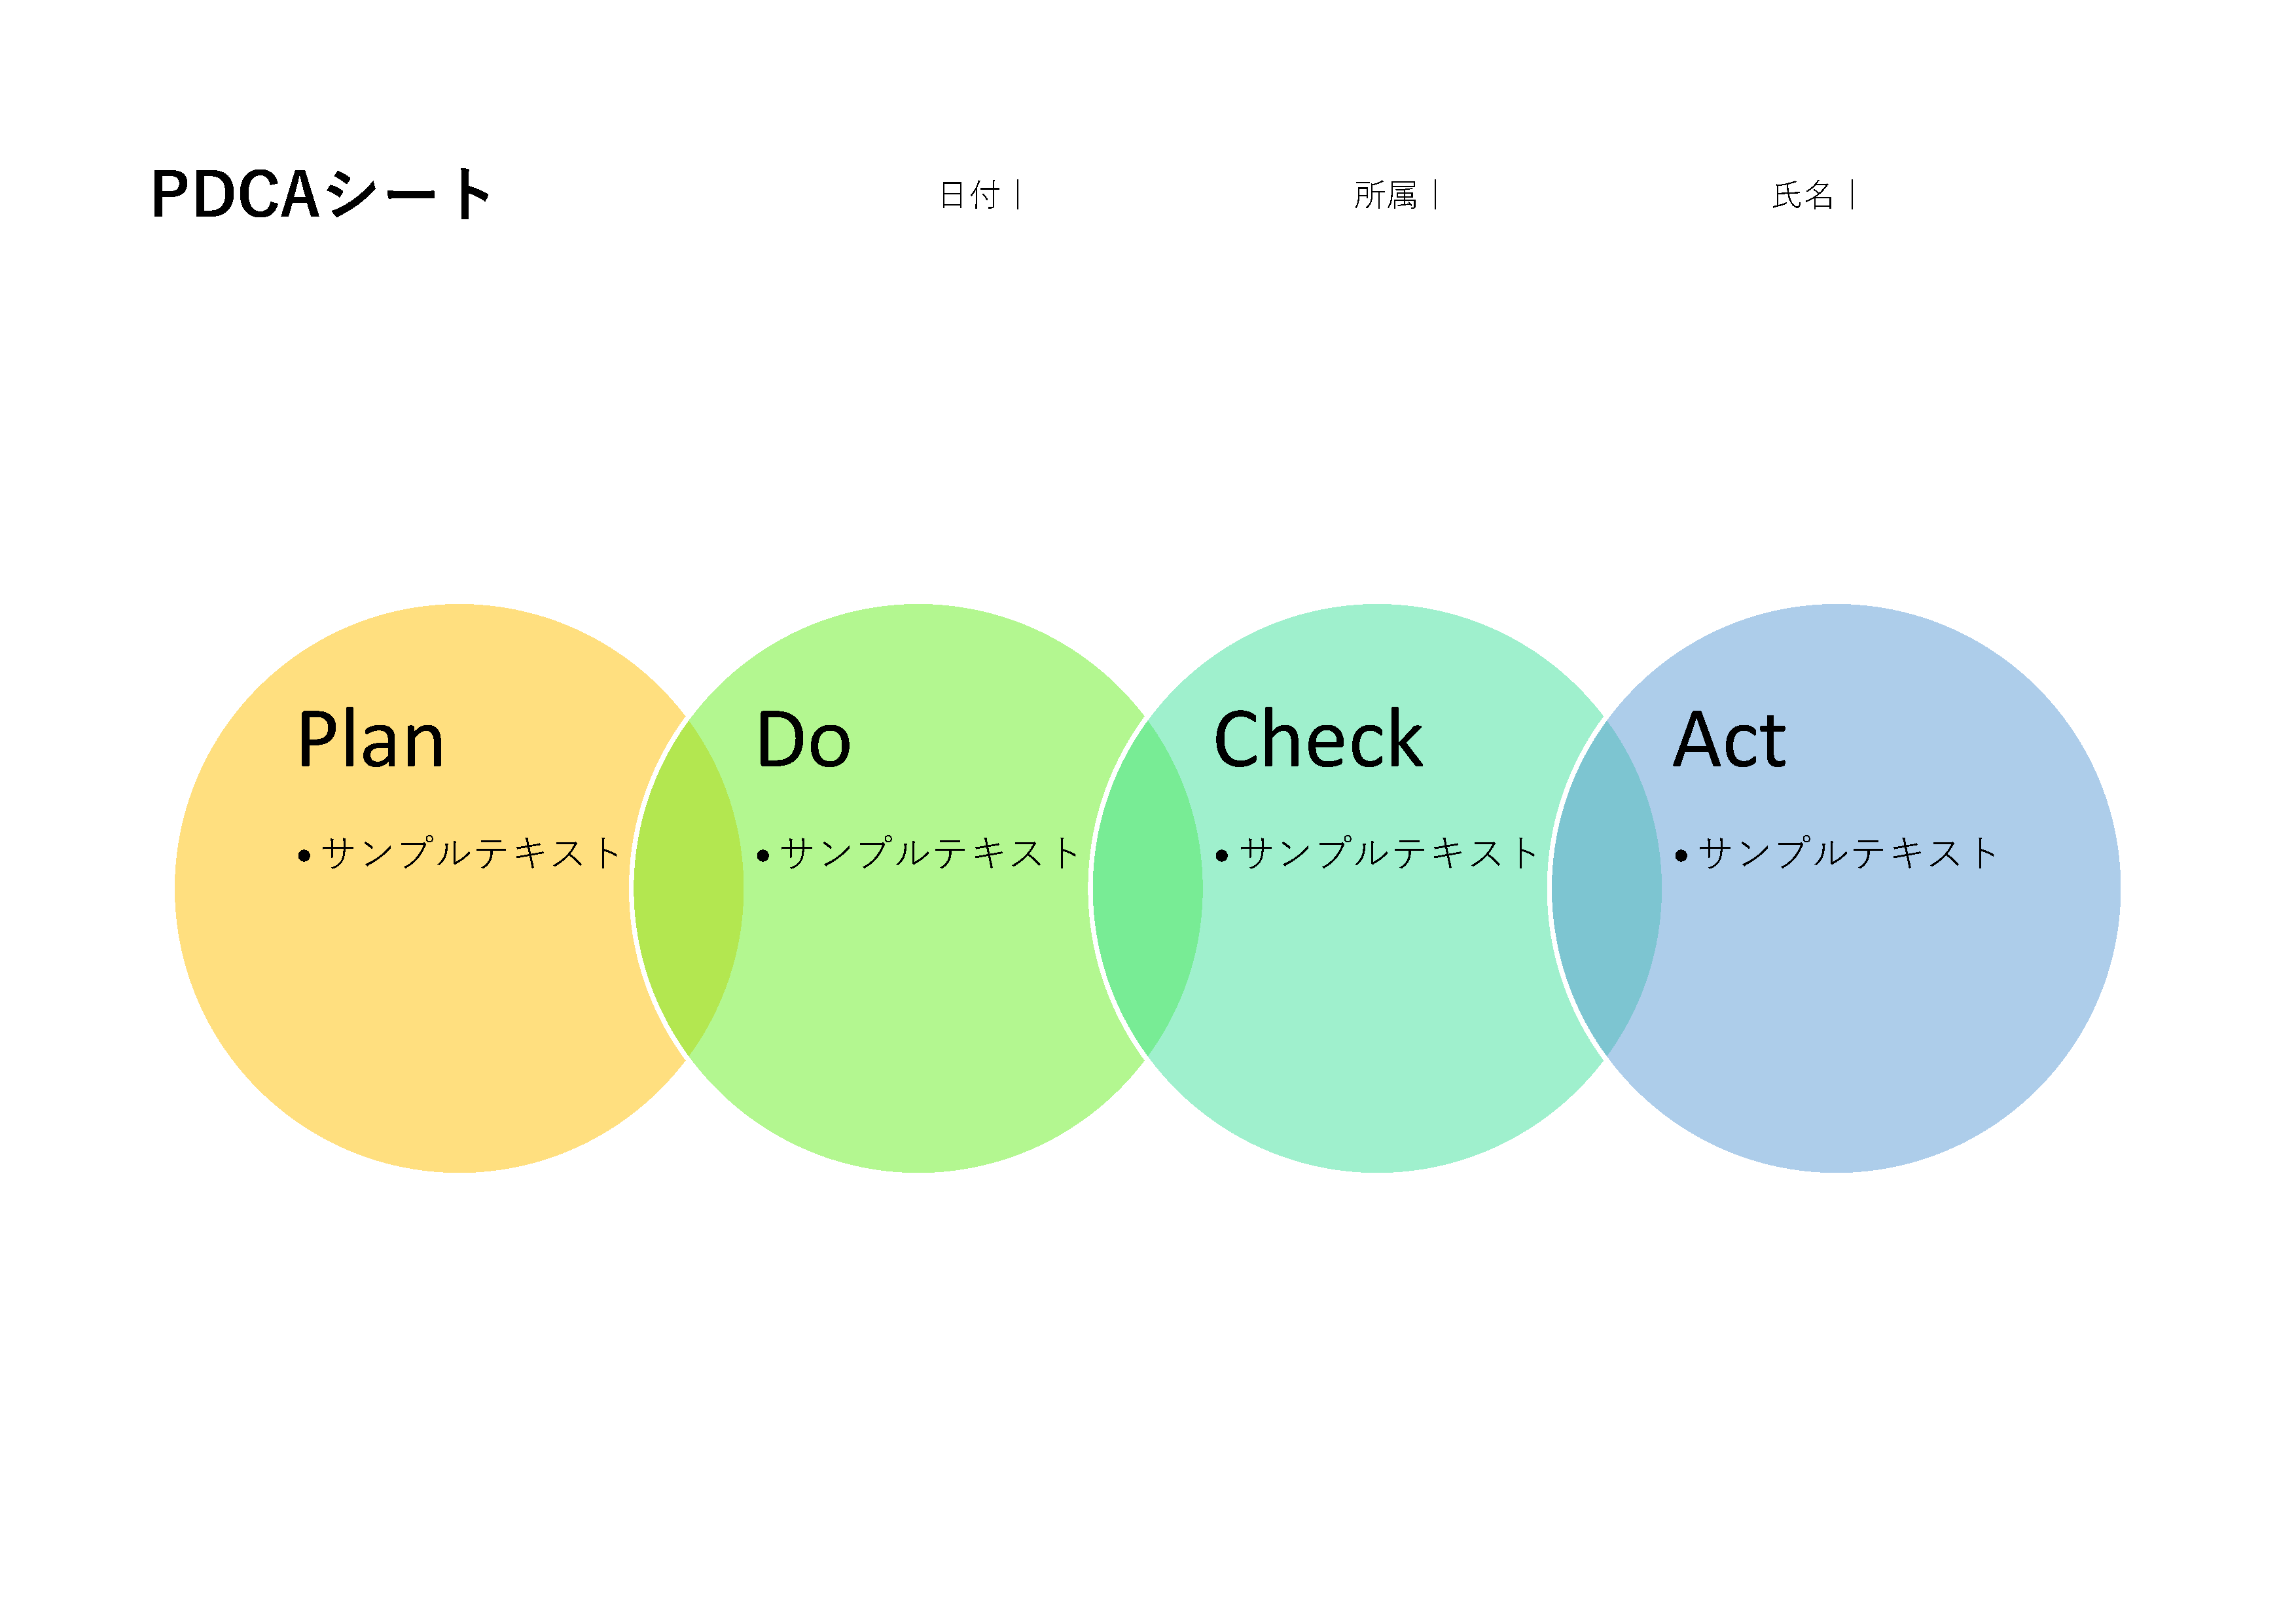 円形のPDCA図。各ステップ（Plan, Do, Check, Act）が色分けされ、中央に向かって連結している。